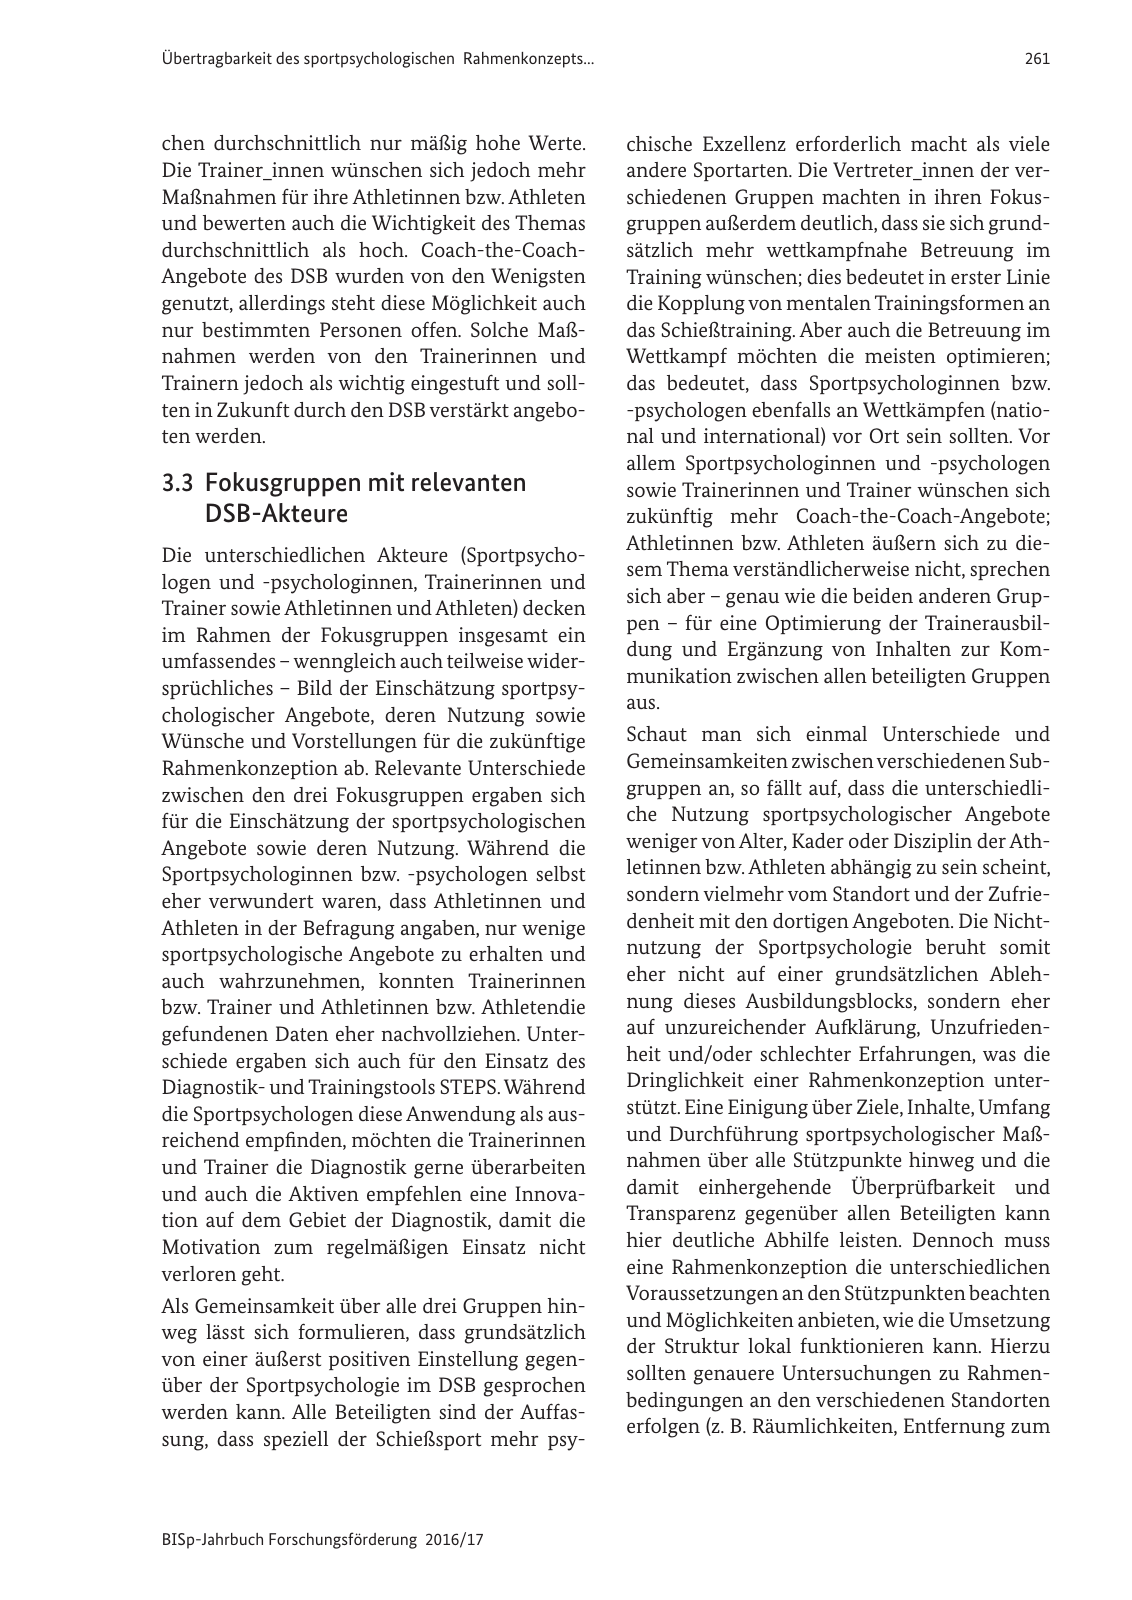 Vorschau BISp-Jahrbuch 2016/2017 Seite 263